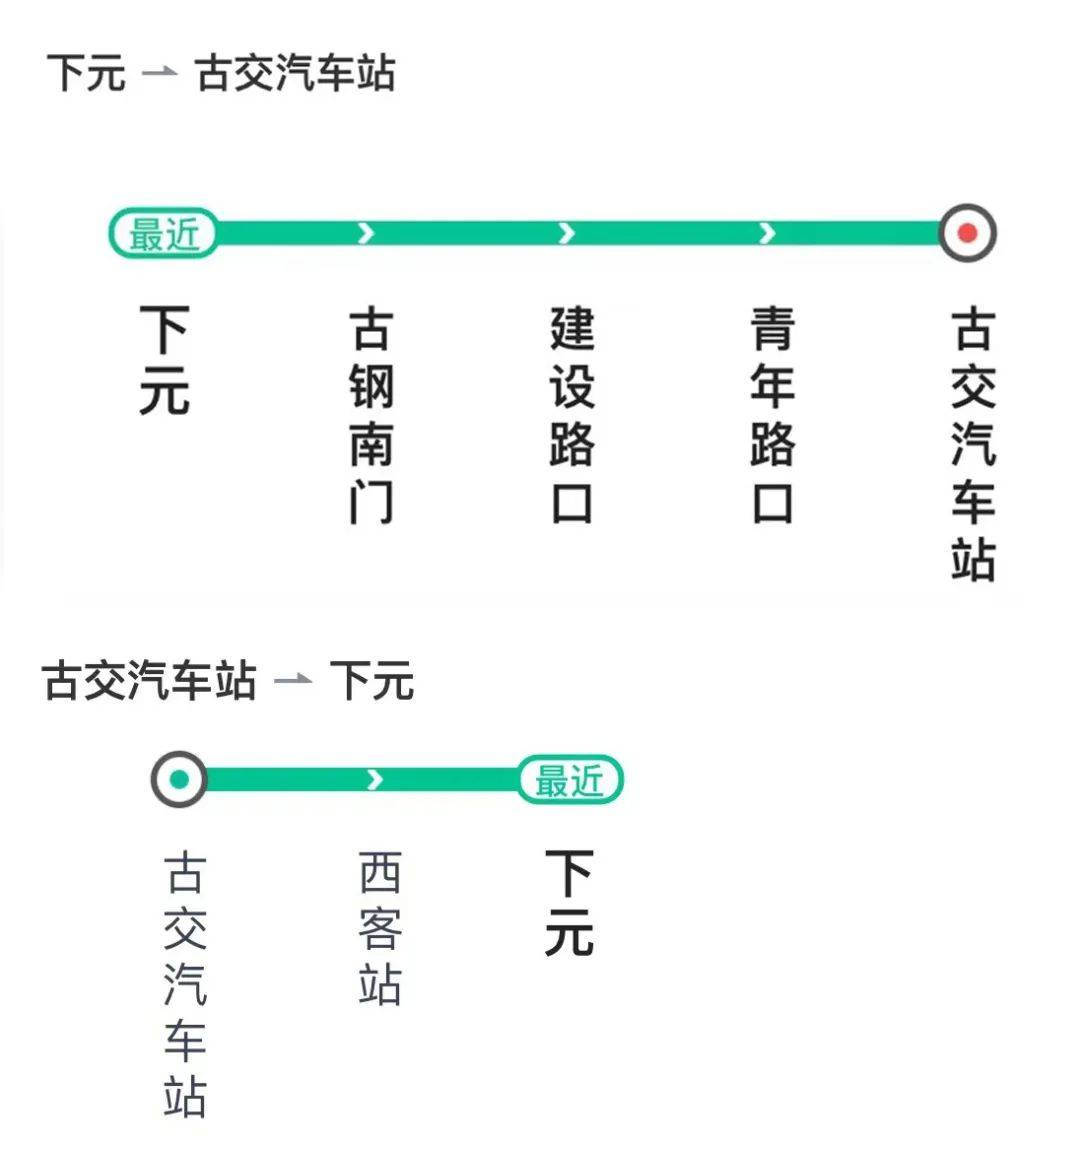 北京917路公交车路线图图片